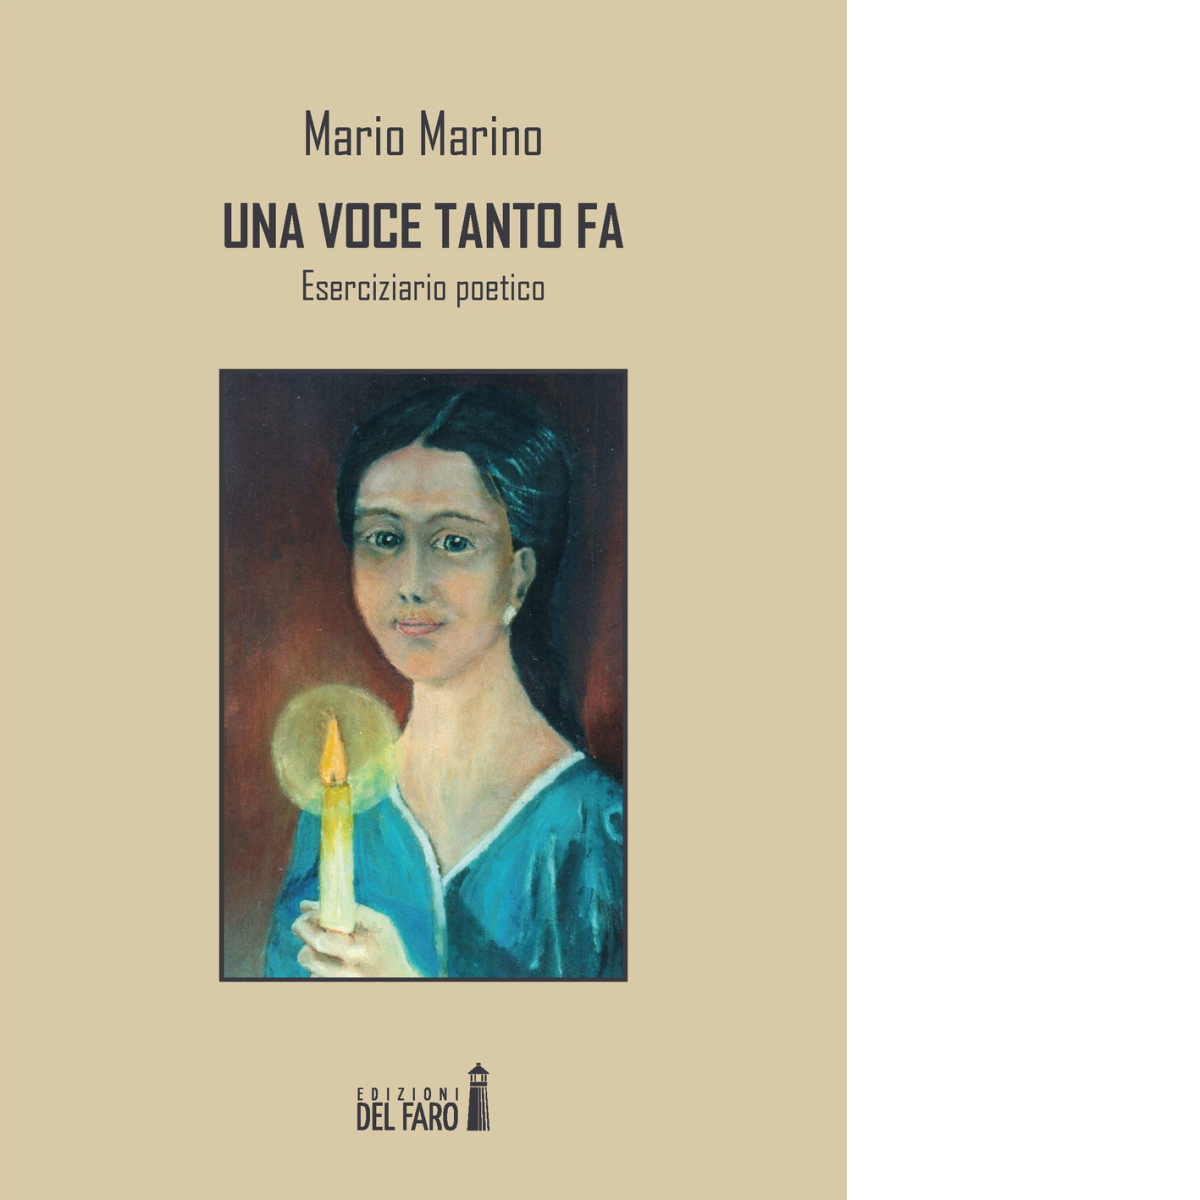 Una voce tanto fa. Eserciziario poetico di Marino Mario - Del Faro, 2017